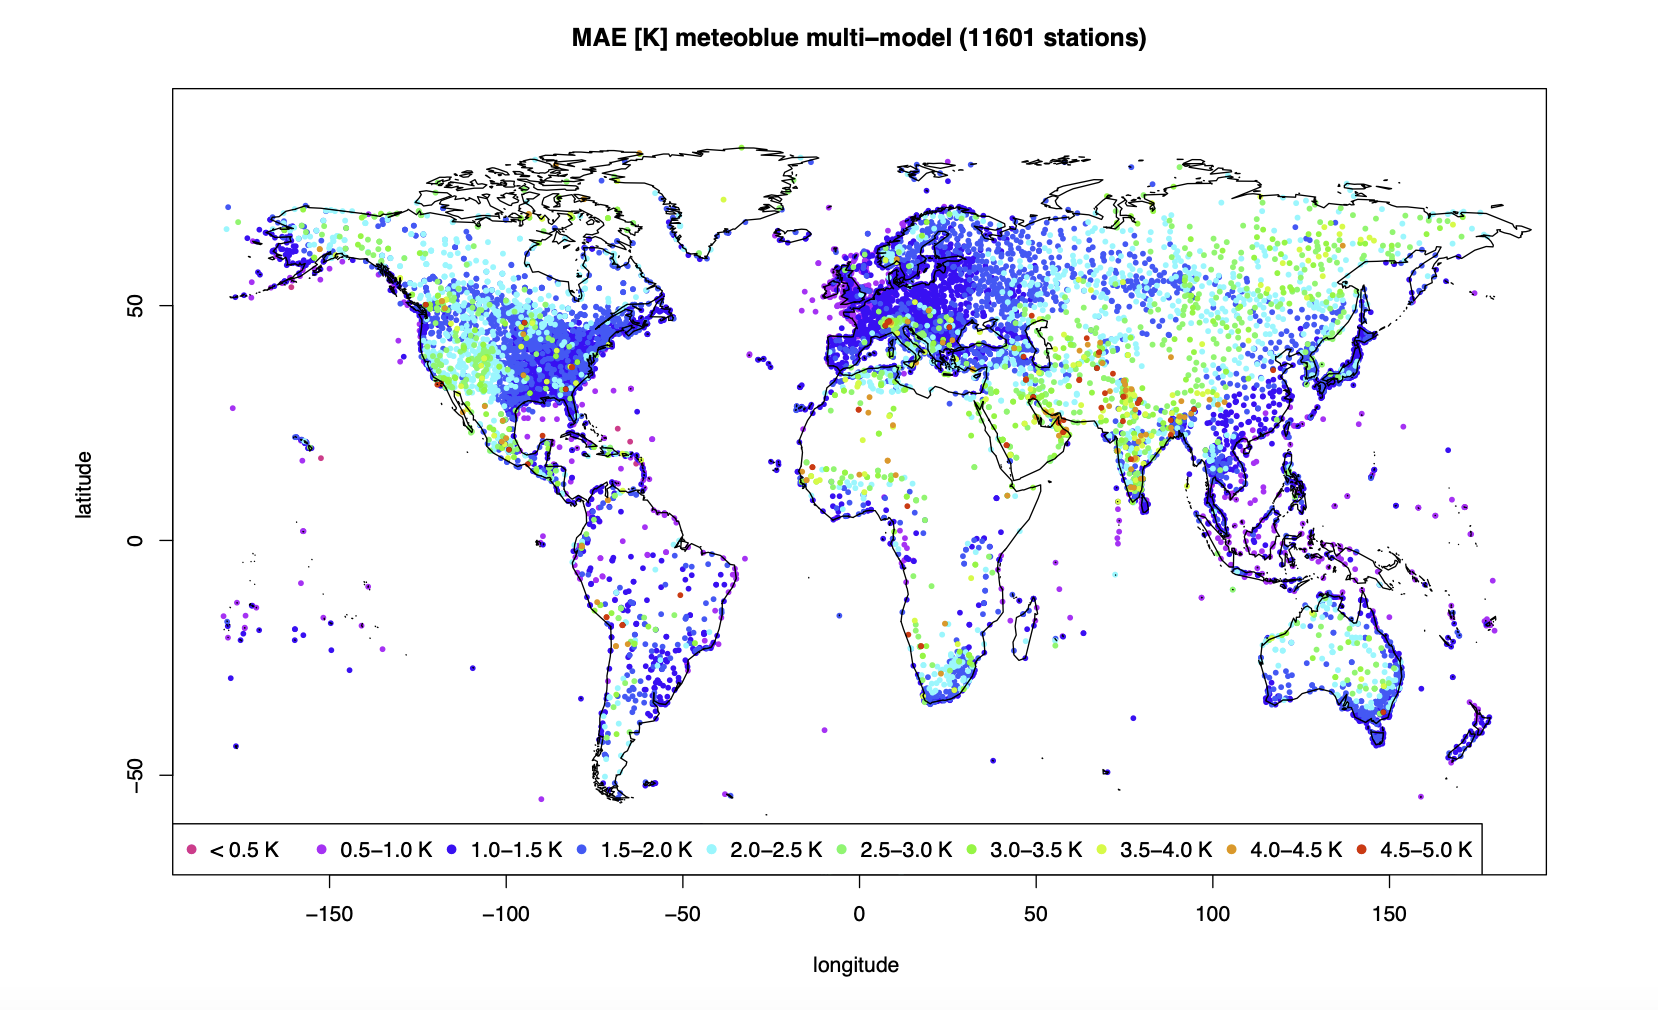 MAE [K] des in der operationellen Vorhersage verwendeten meteoblue MultiModel, verifiziert mit über 10'000 Messungen weltweit aus dem Jahr 2018.